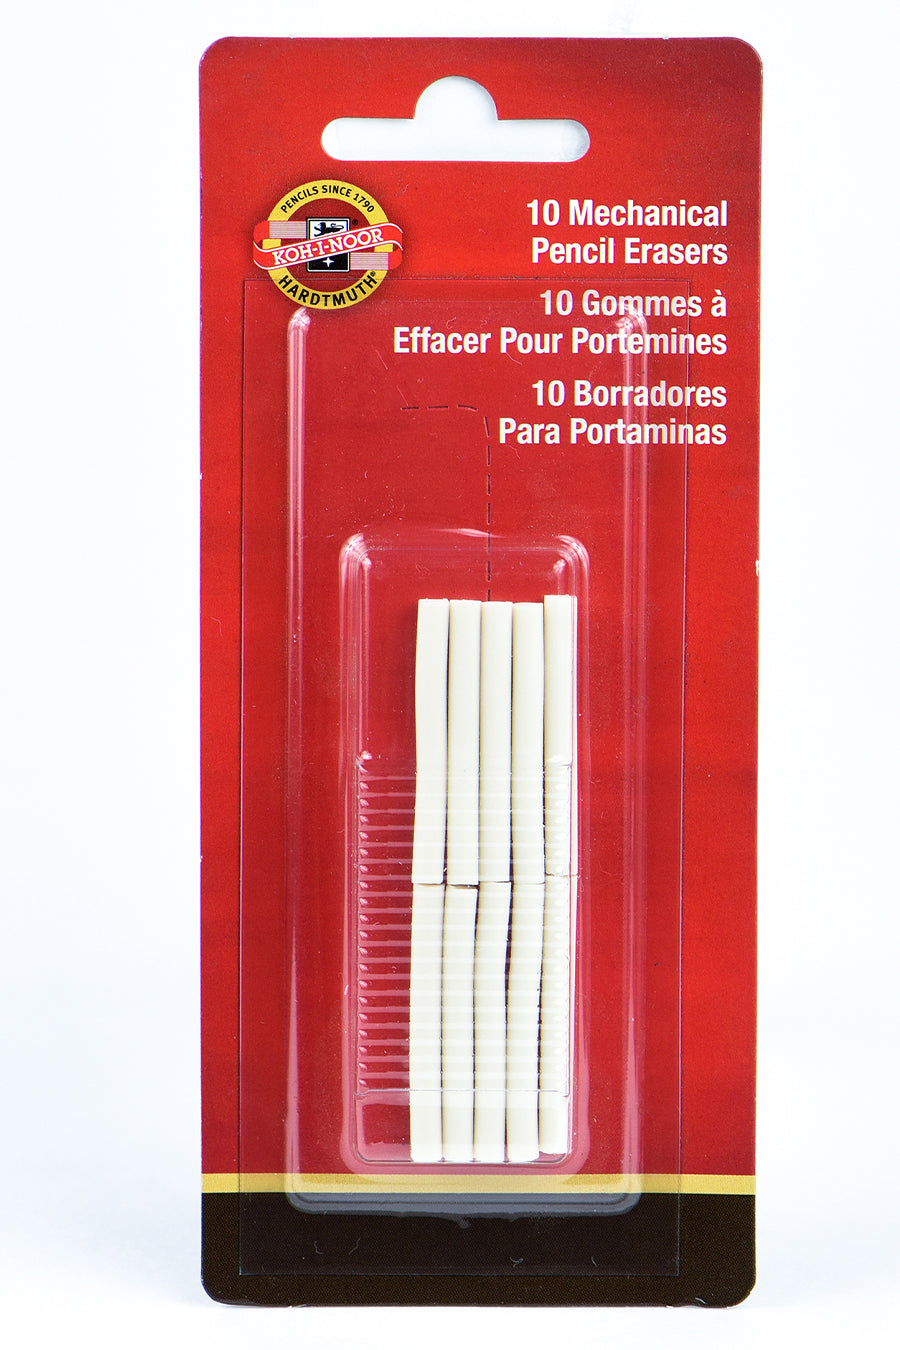 Mephisto Eraser Refills, 10 Pack, Carded